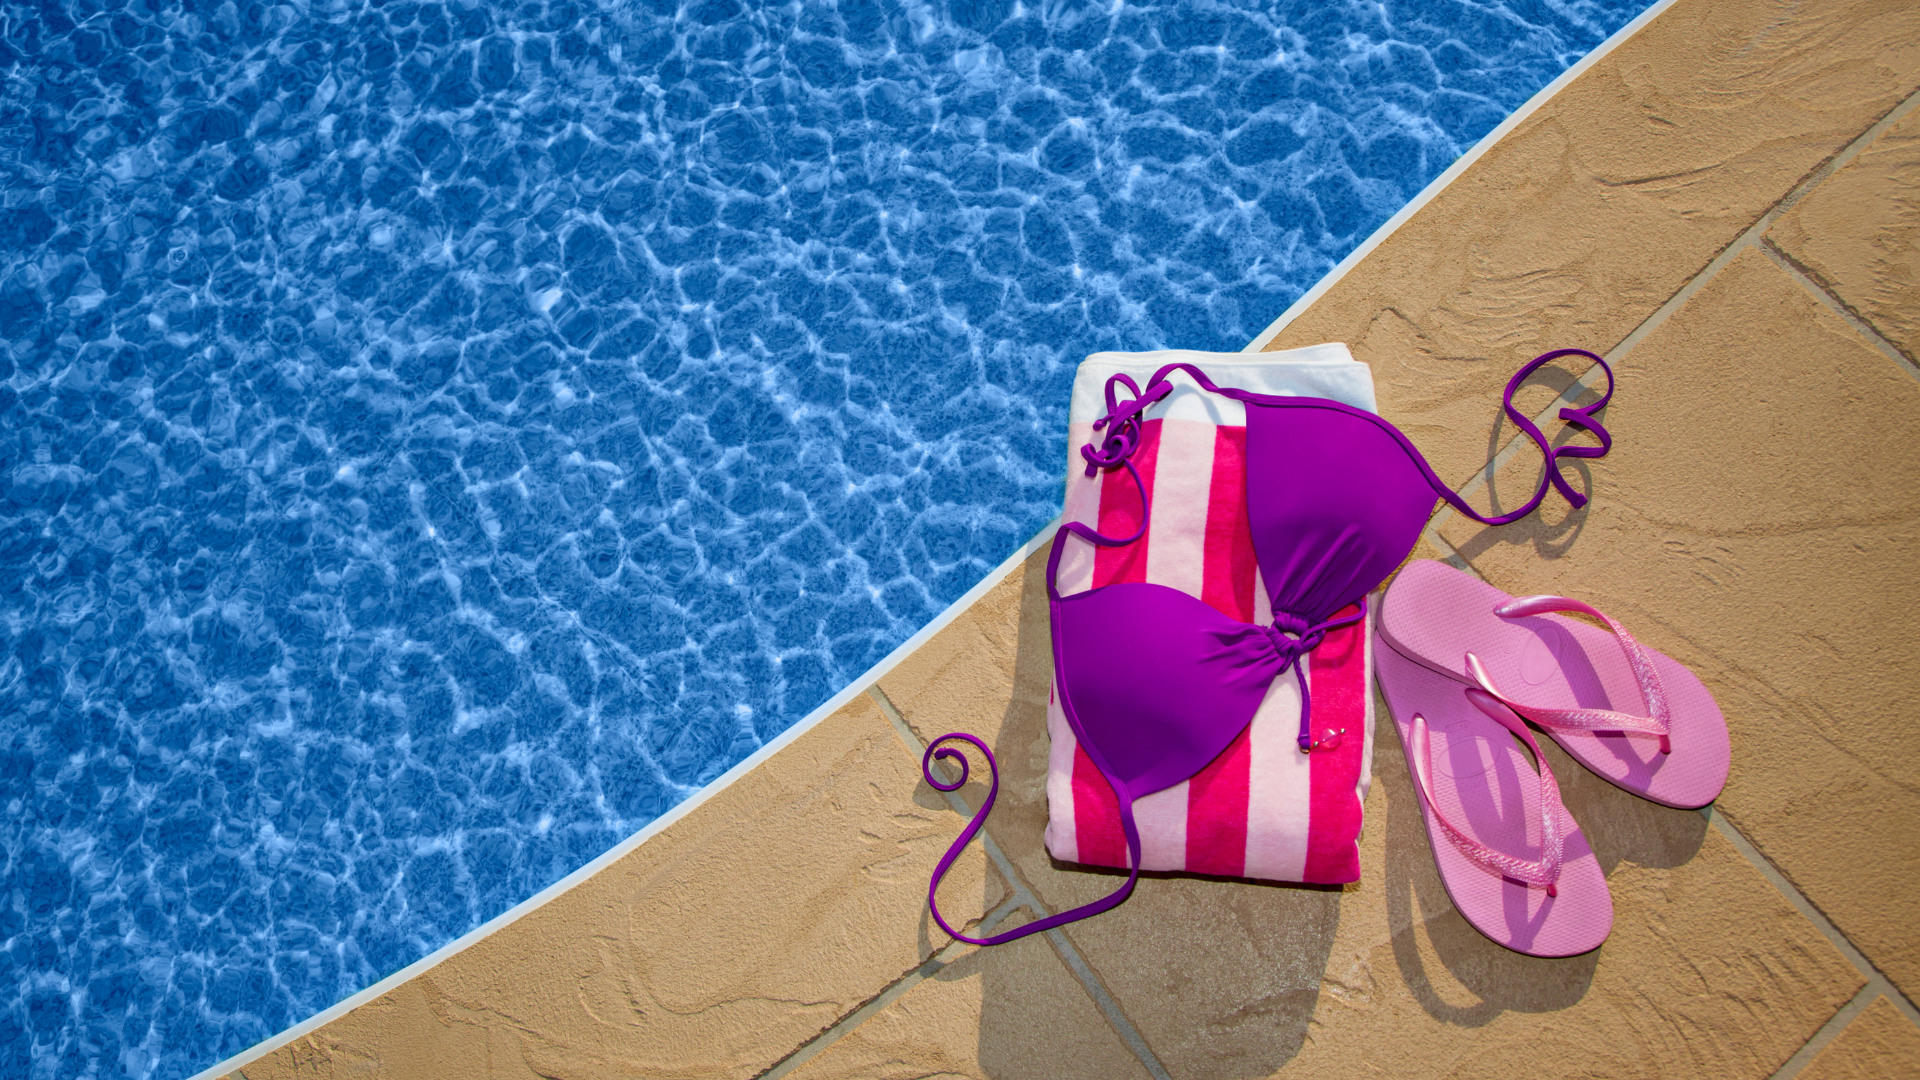 La towelkini, lo último en moda de baño para presumir este verano